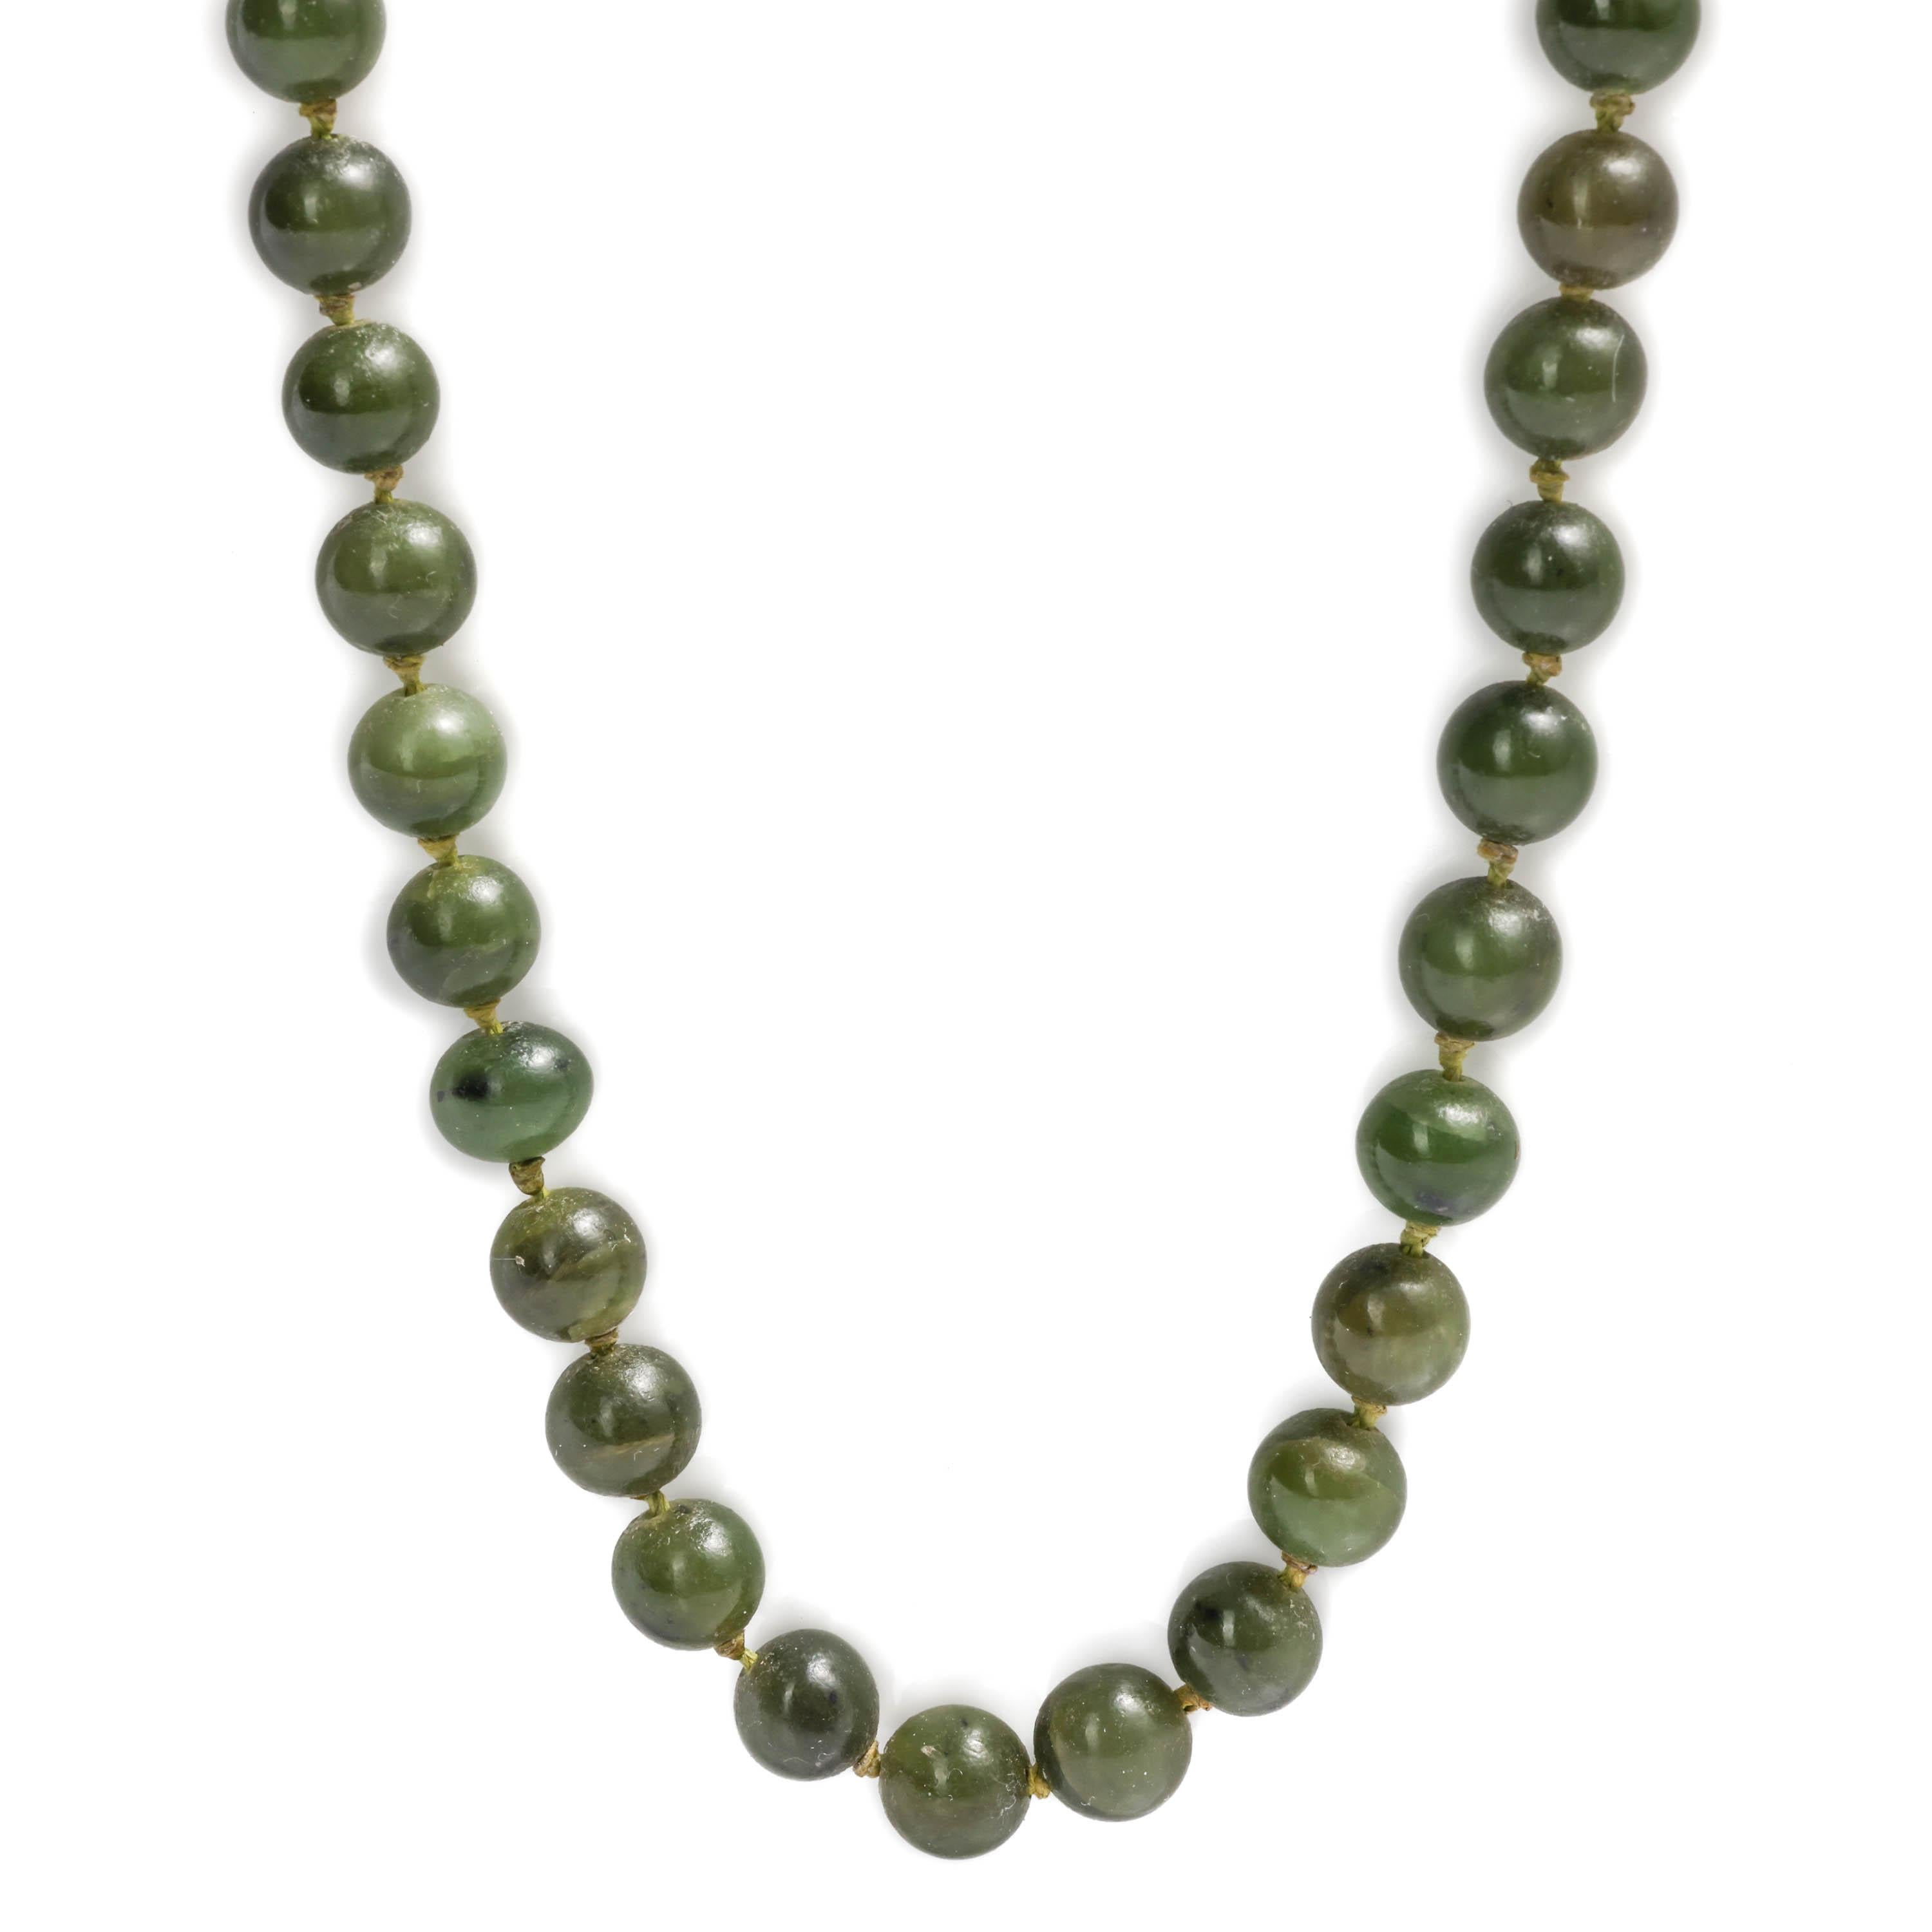 Diese Nephrit-Jade-Halskette in Opernlänge (33 Zoll) ist genau wie diejenige, die Ihre chinesische Urgroßmutter trug oder vielleicht noch trägt. Diejenigen von uns, die keine chinesische Urgroßmutter haben, müssen sich mit den Schätzen begnügen, die